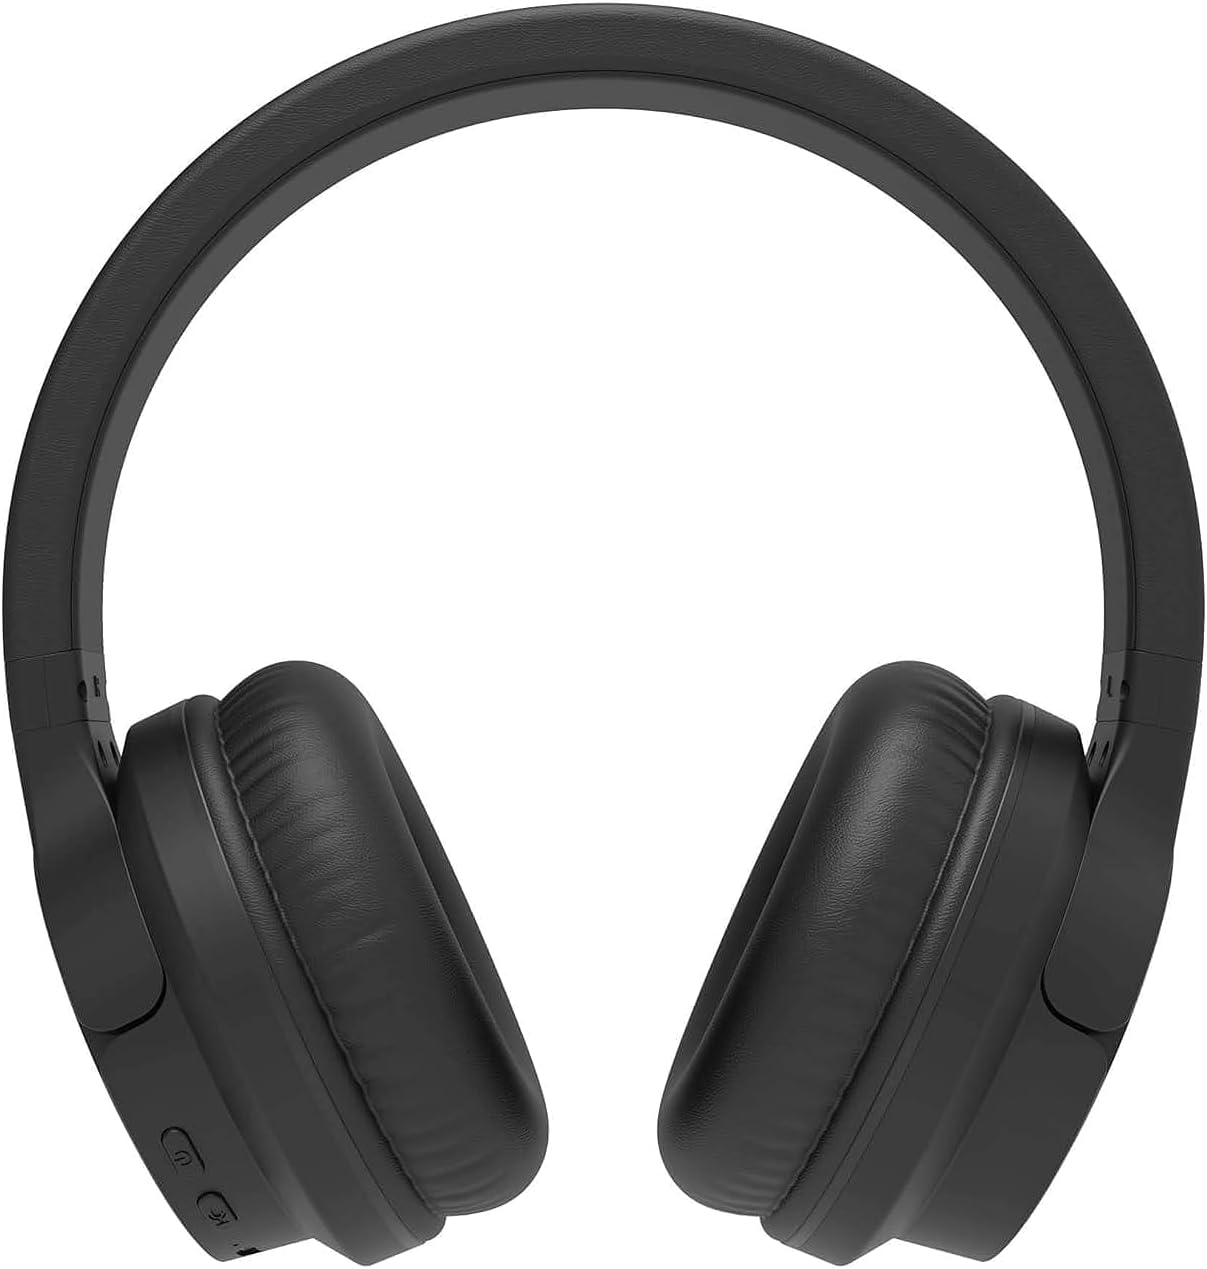 Blaupunkt BLP4120-133 over Ear Bluetooth Headphones with Extra Bass, Black, Wireless, Standard